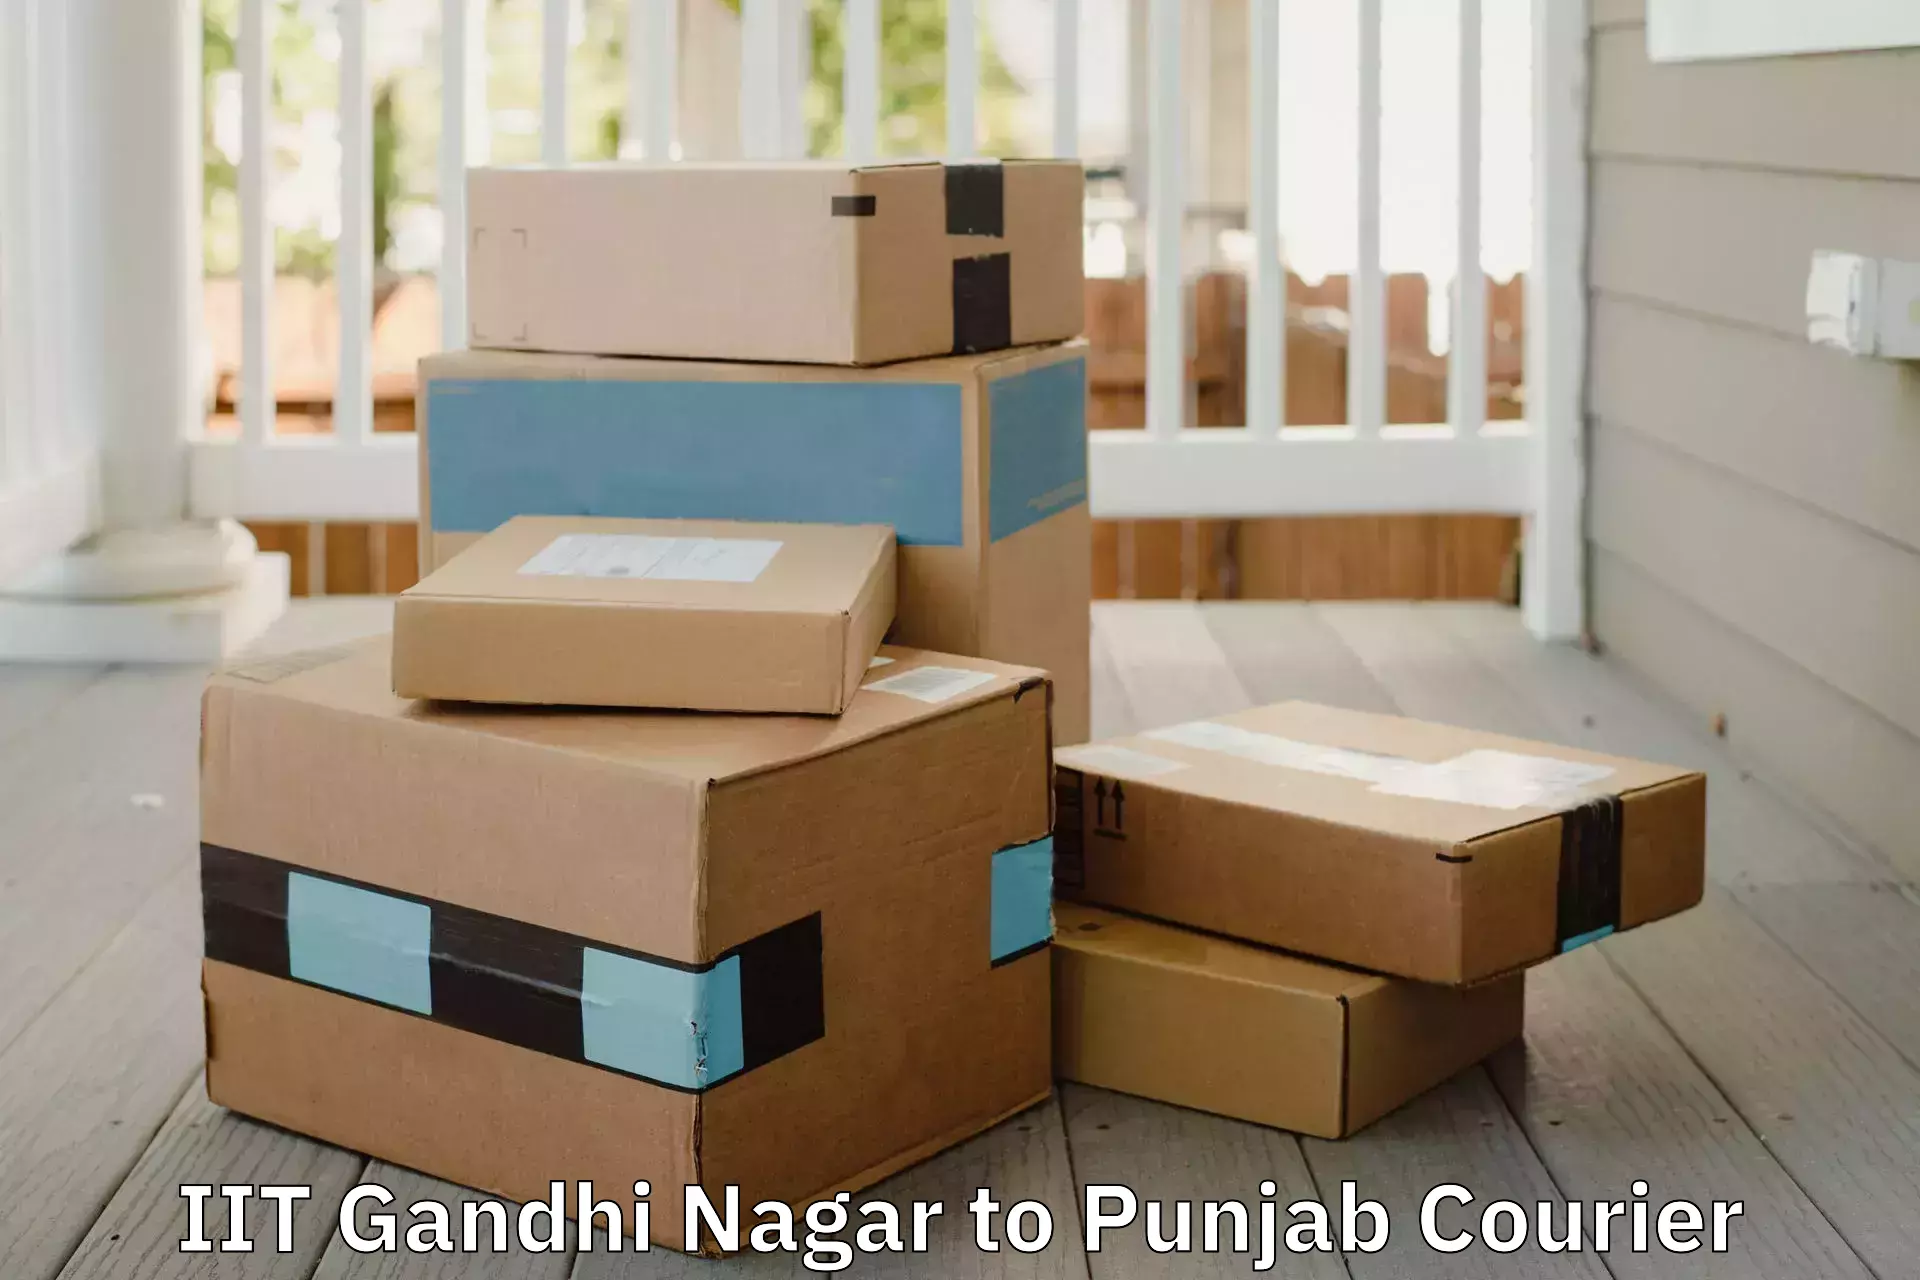 Home furniture relocation IIT Gandhi Nagar to Talwara